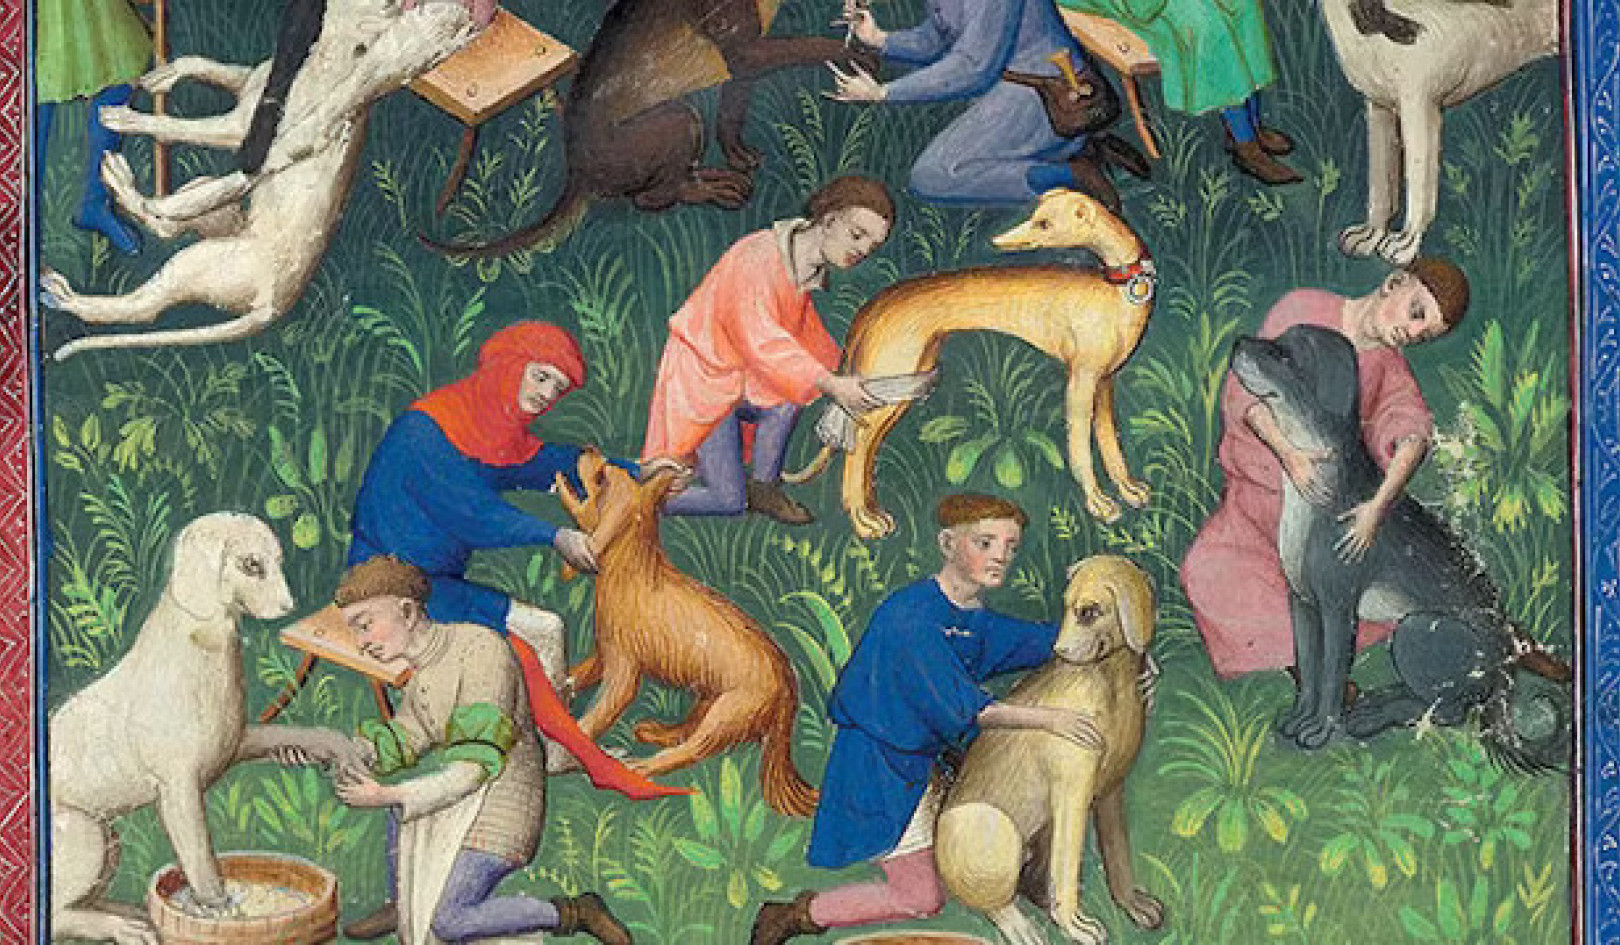 Hunde von einst: Ein Einblick in die mittelalterliche Hundehaltung